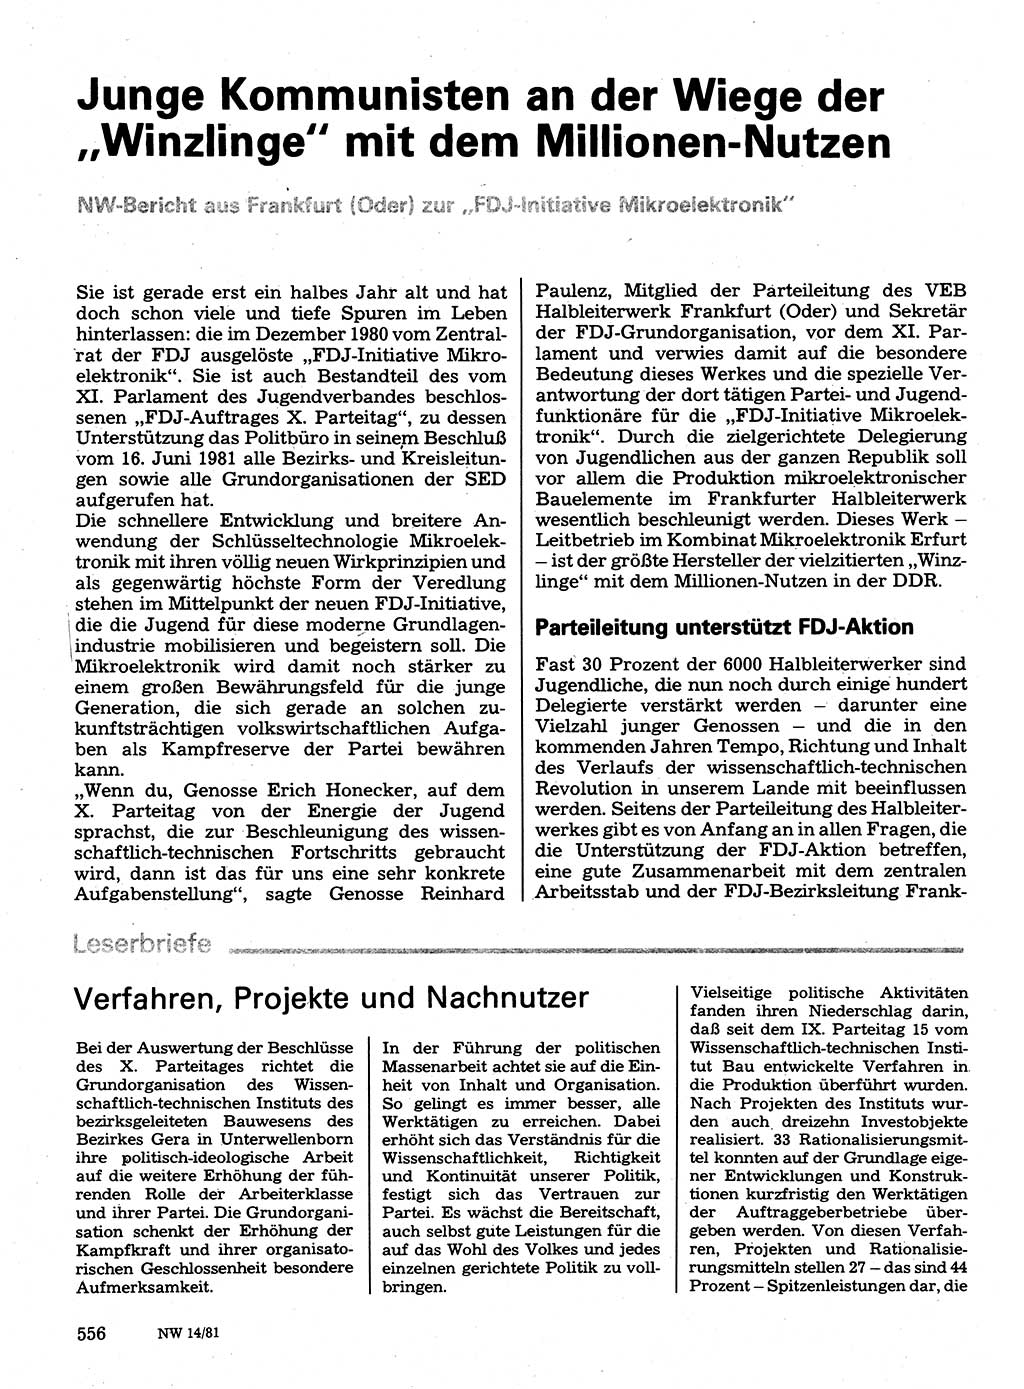 Neuer Weg (NW), Organ des Zentralkomitees (ZK) der SED (Sozialistische Einheitspartei Deutschlands) für Fragen des Parteilebens, 36. Jahrgang [Deutsche Demokratische Republik (DDR)] 1981, Seite 556 (NW ZK SED DDR 1981, S. 556)